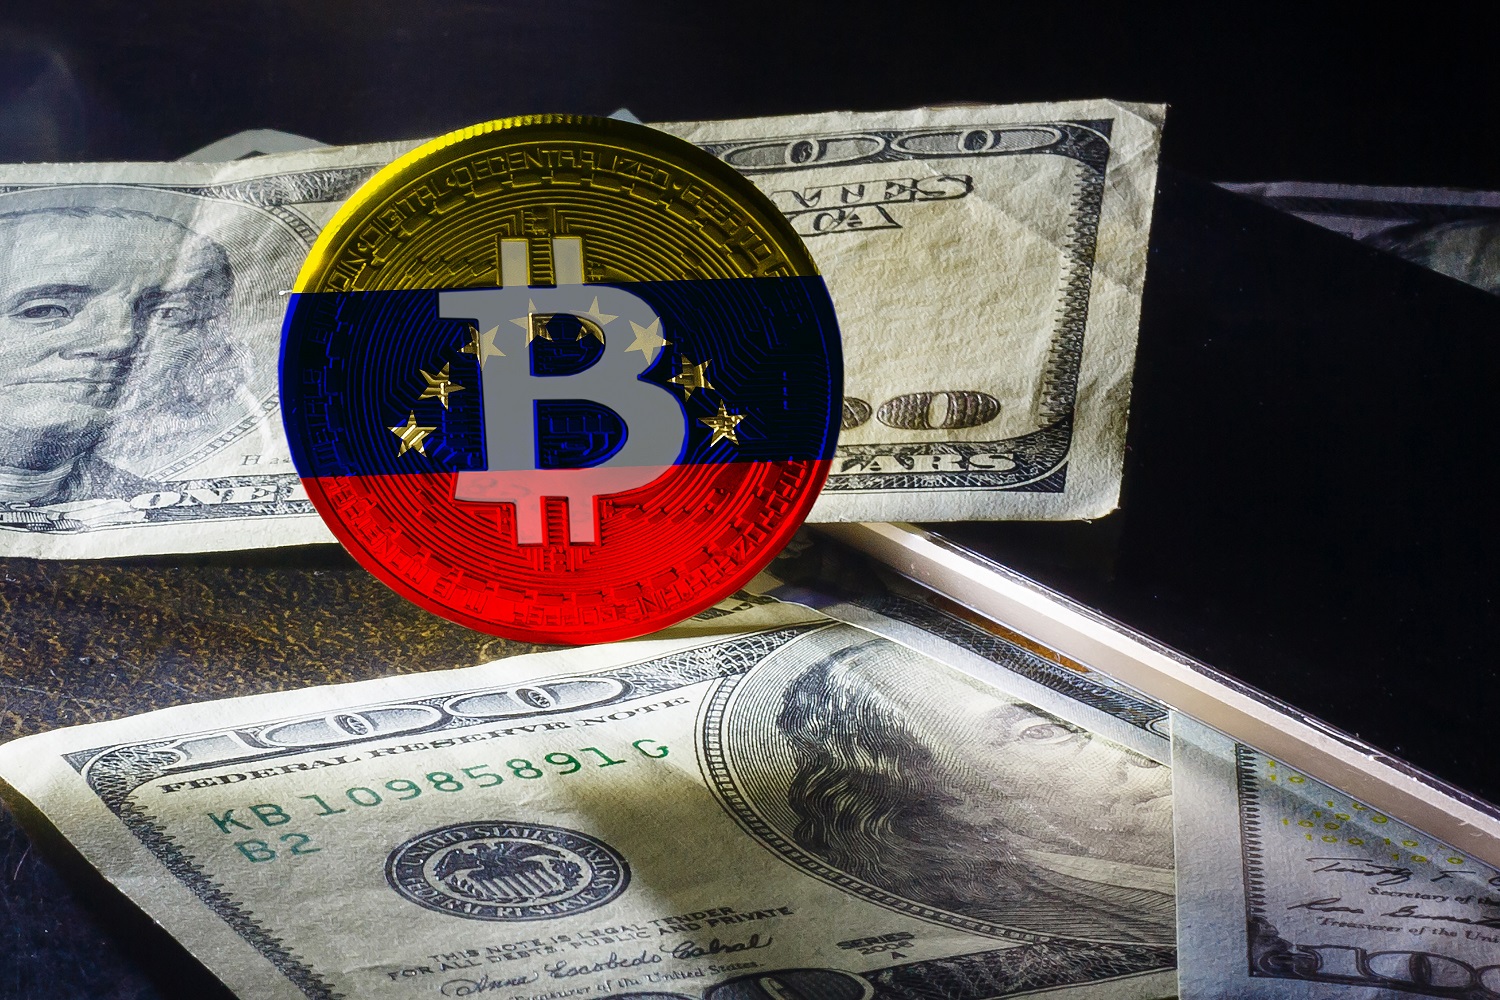 Bitcoin logosu ve Venezüella bayrağının renkleri ile süslenmiş bir jeton, birkaç 100 dolarlık banknotun yanında duruyor.